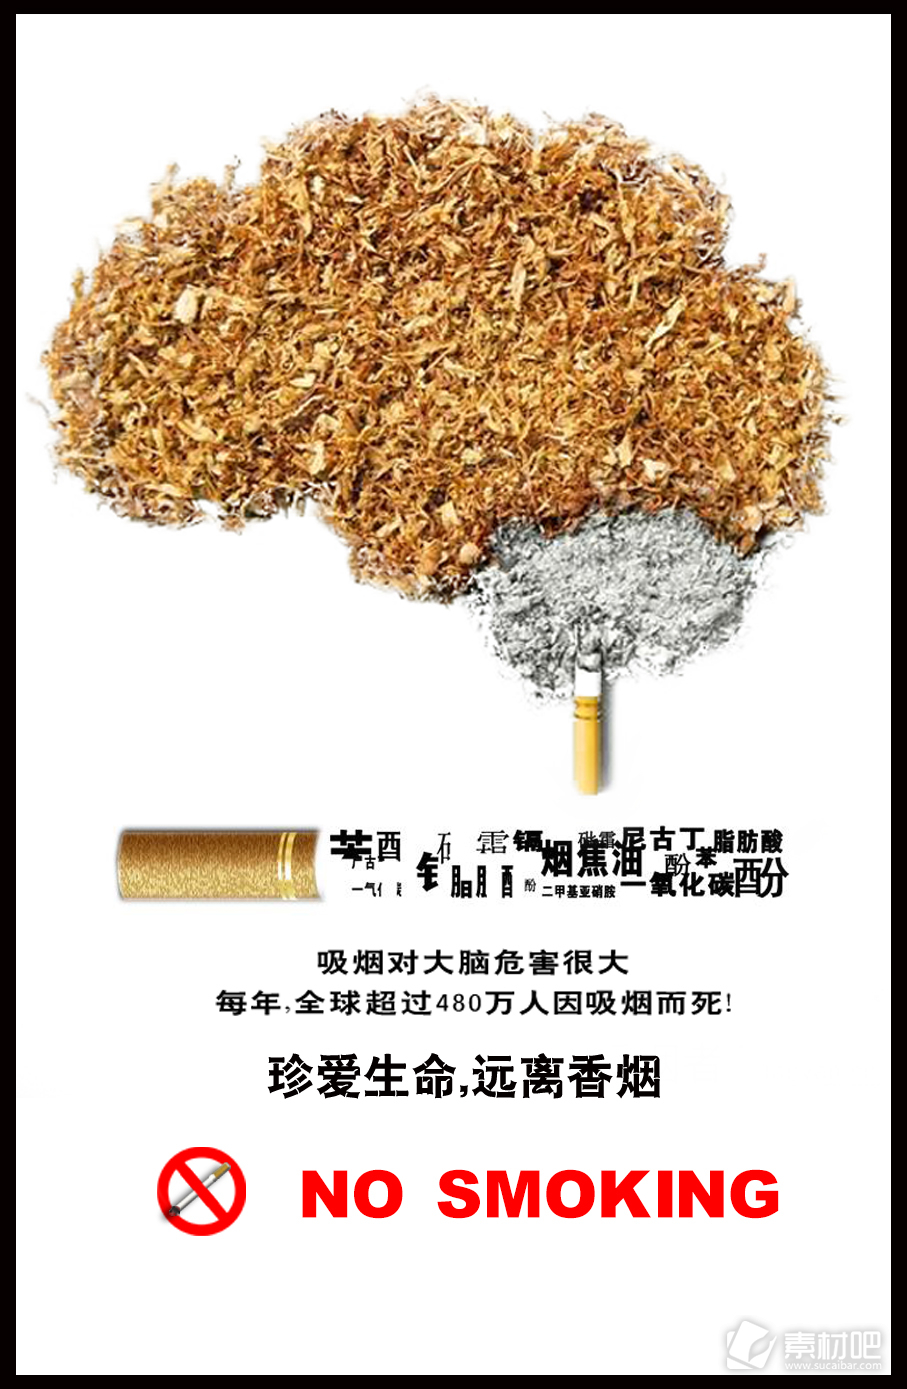 禁烟宣传公益海报PSD模板